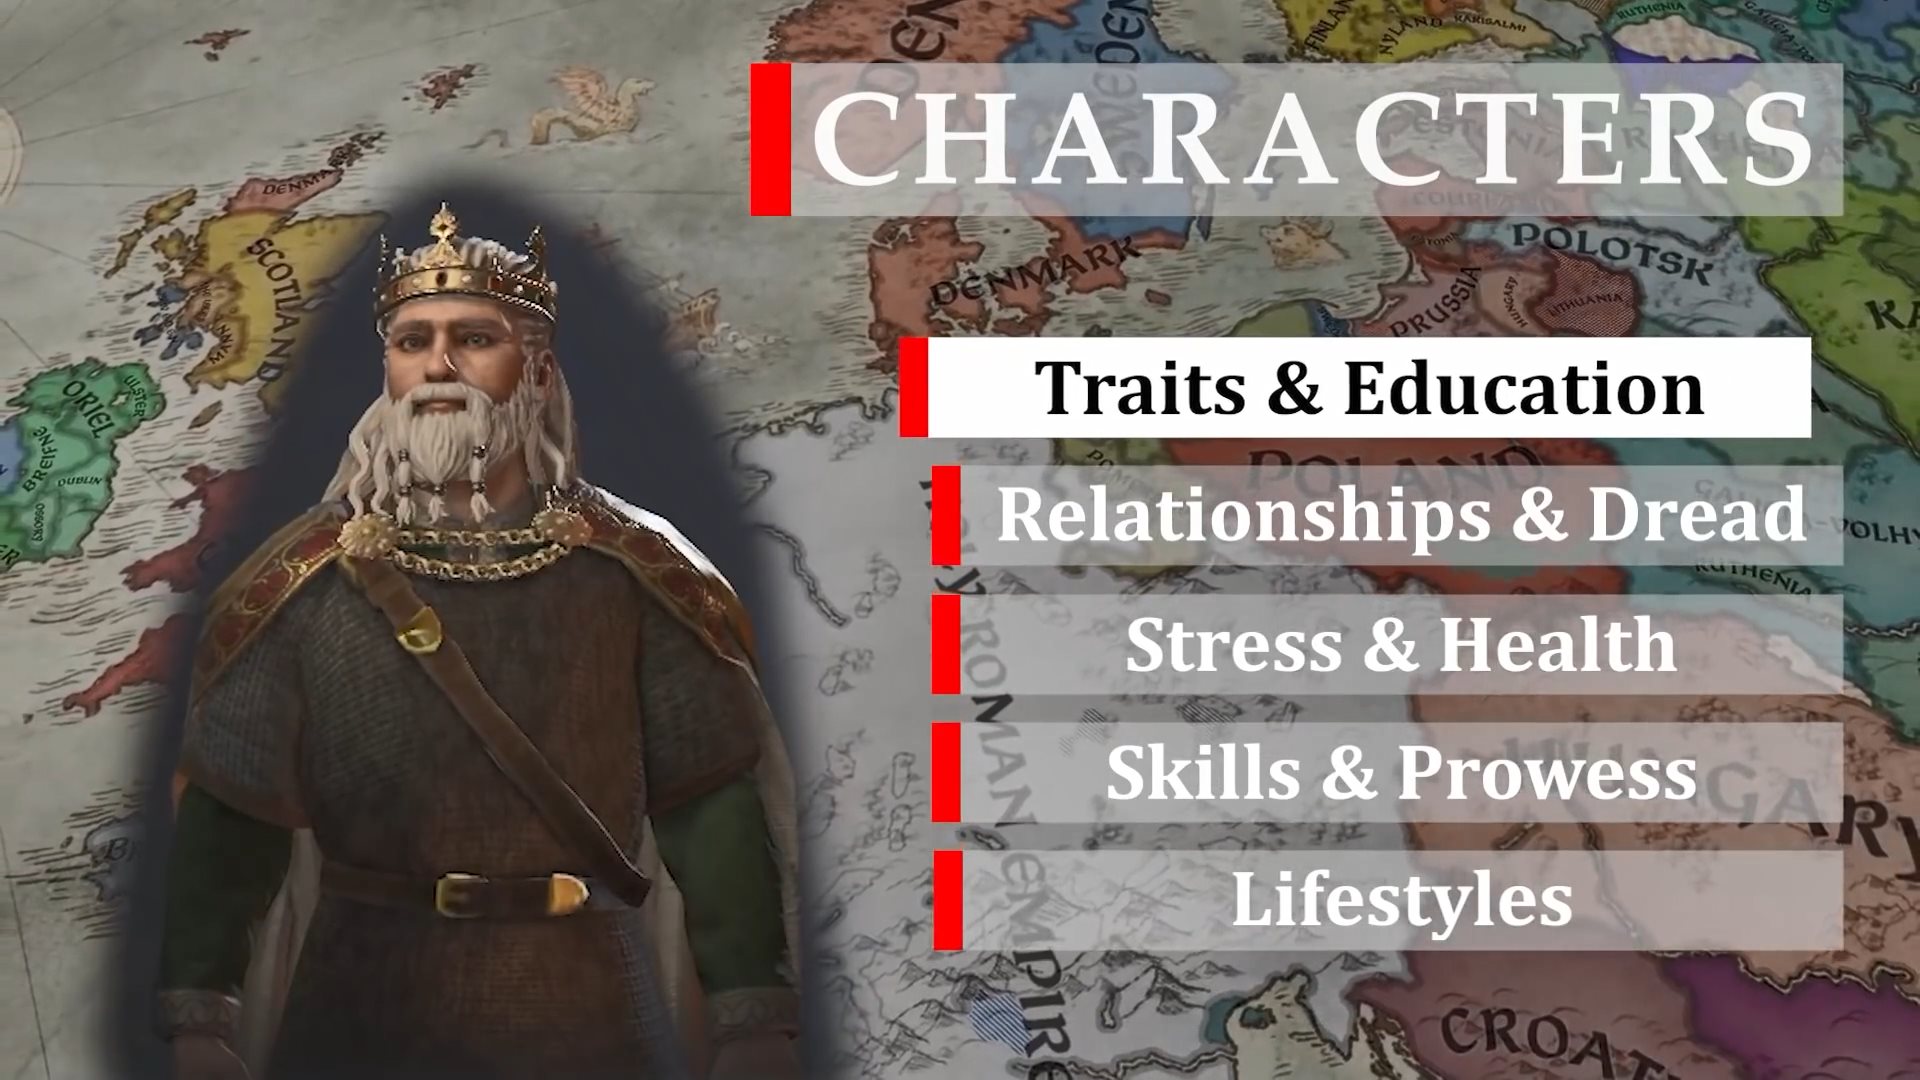 《十字軍之王3》角色介紹 個性將影響角色做出的抉擇